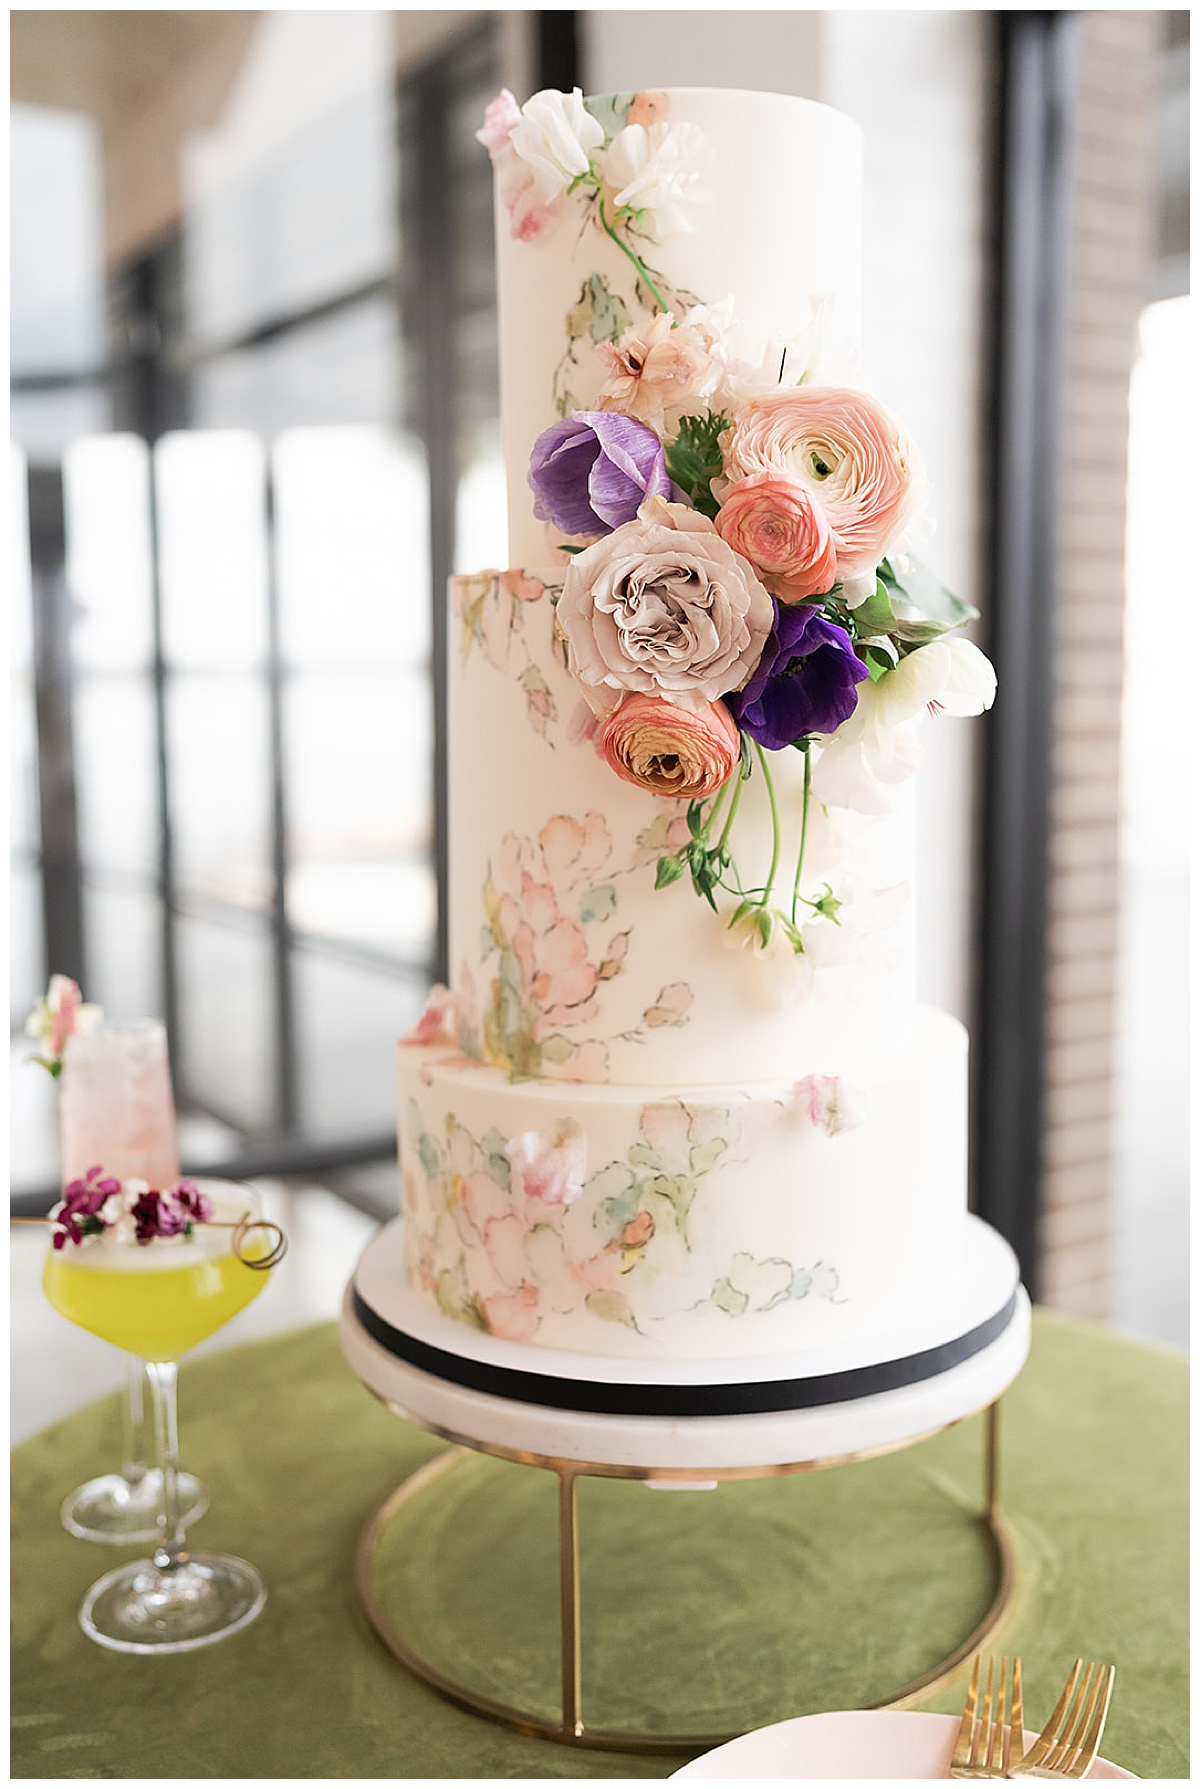 Stunning garden inspired cake for Houston’s Best Wedding Photographers